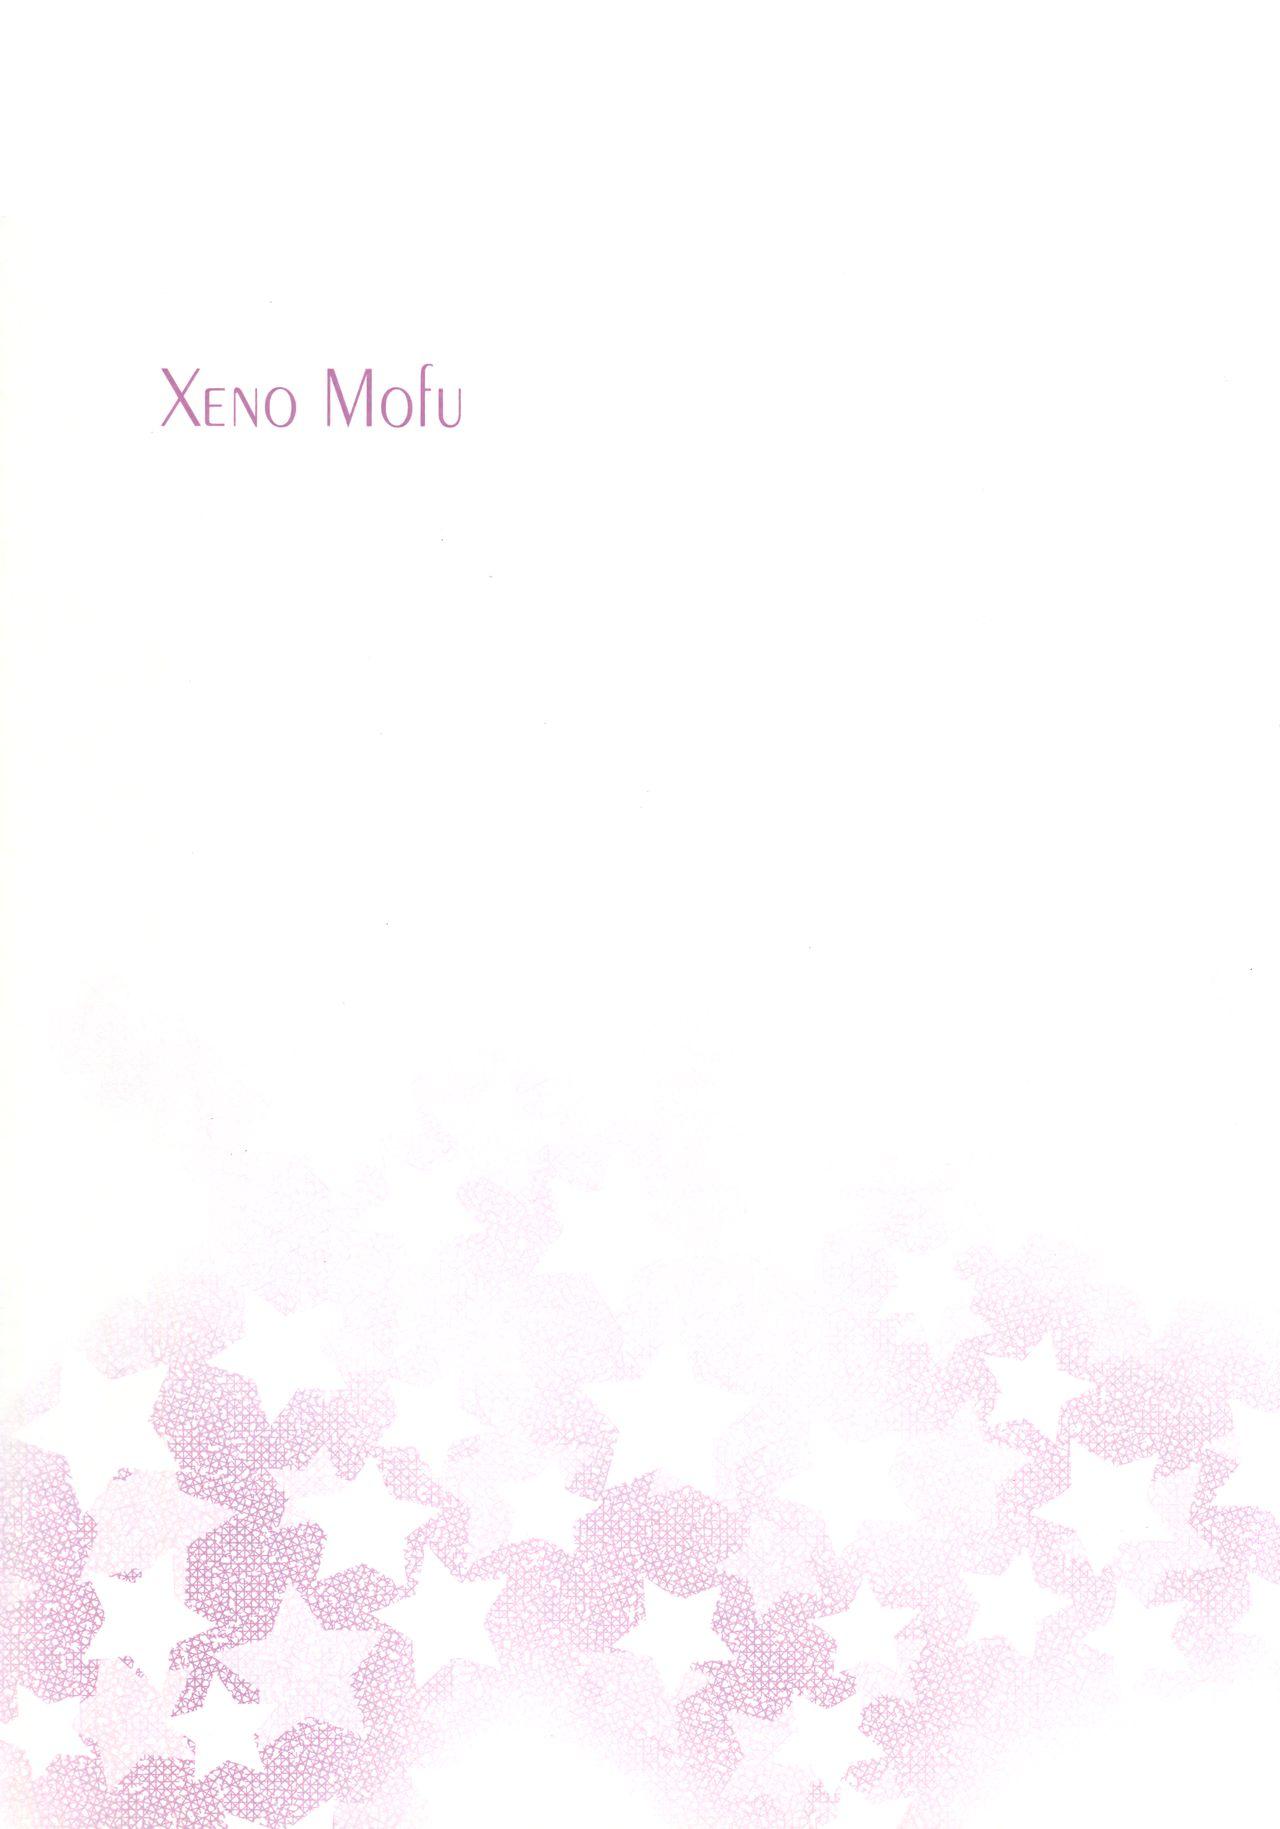 Xeno Mofu 1